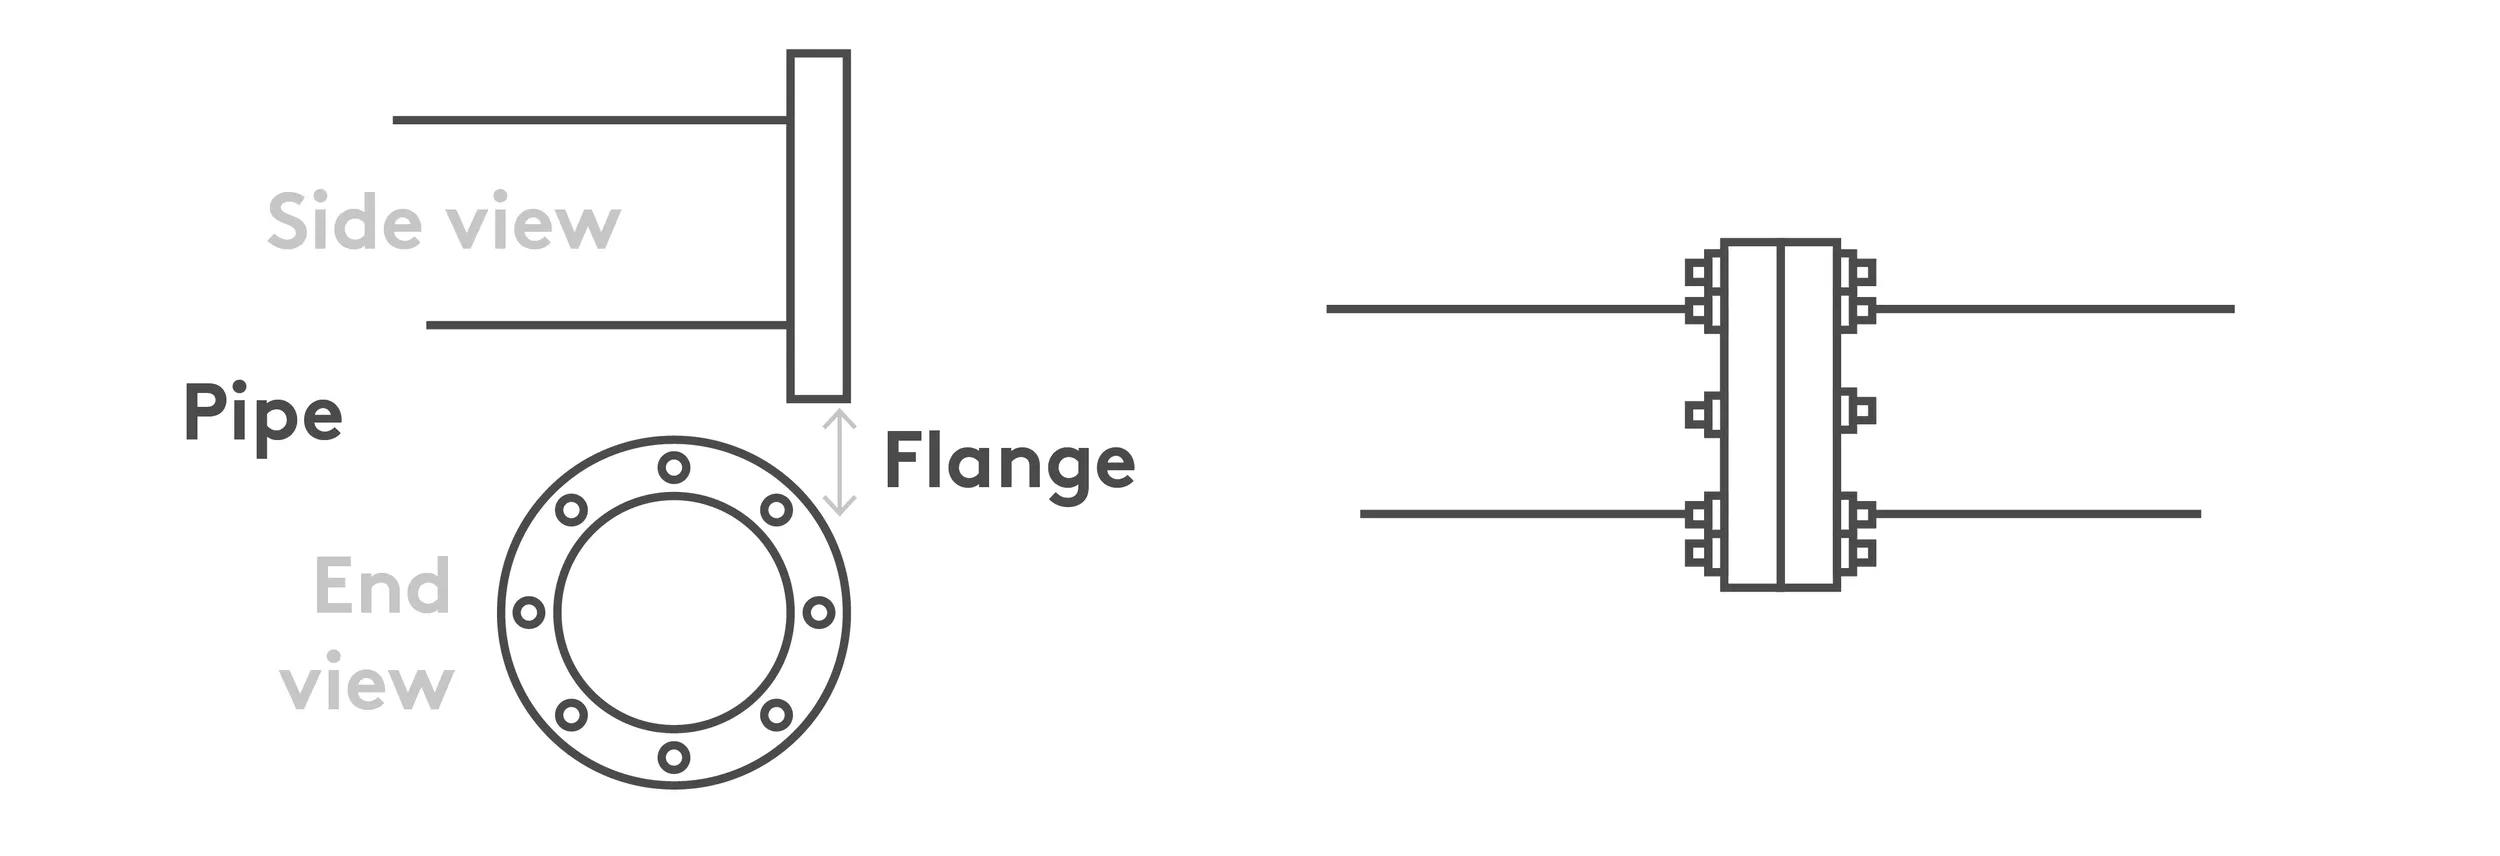 Flange diagram